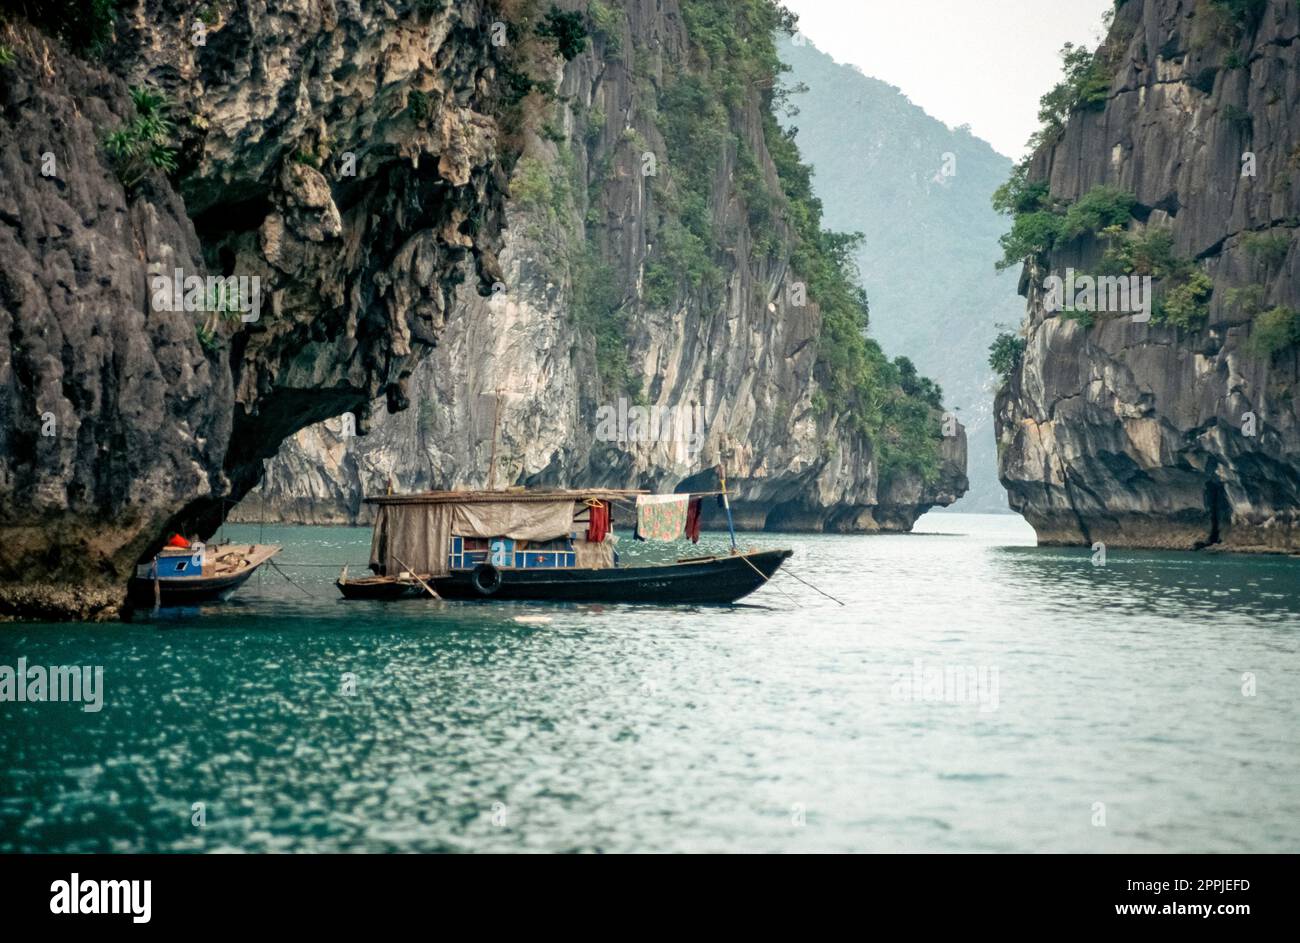 Diapositive numérisée de la photographie couleur historique de la région côtière du Vietnam dans la baie de Halong en mer de Chine Banque D'Images